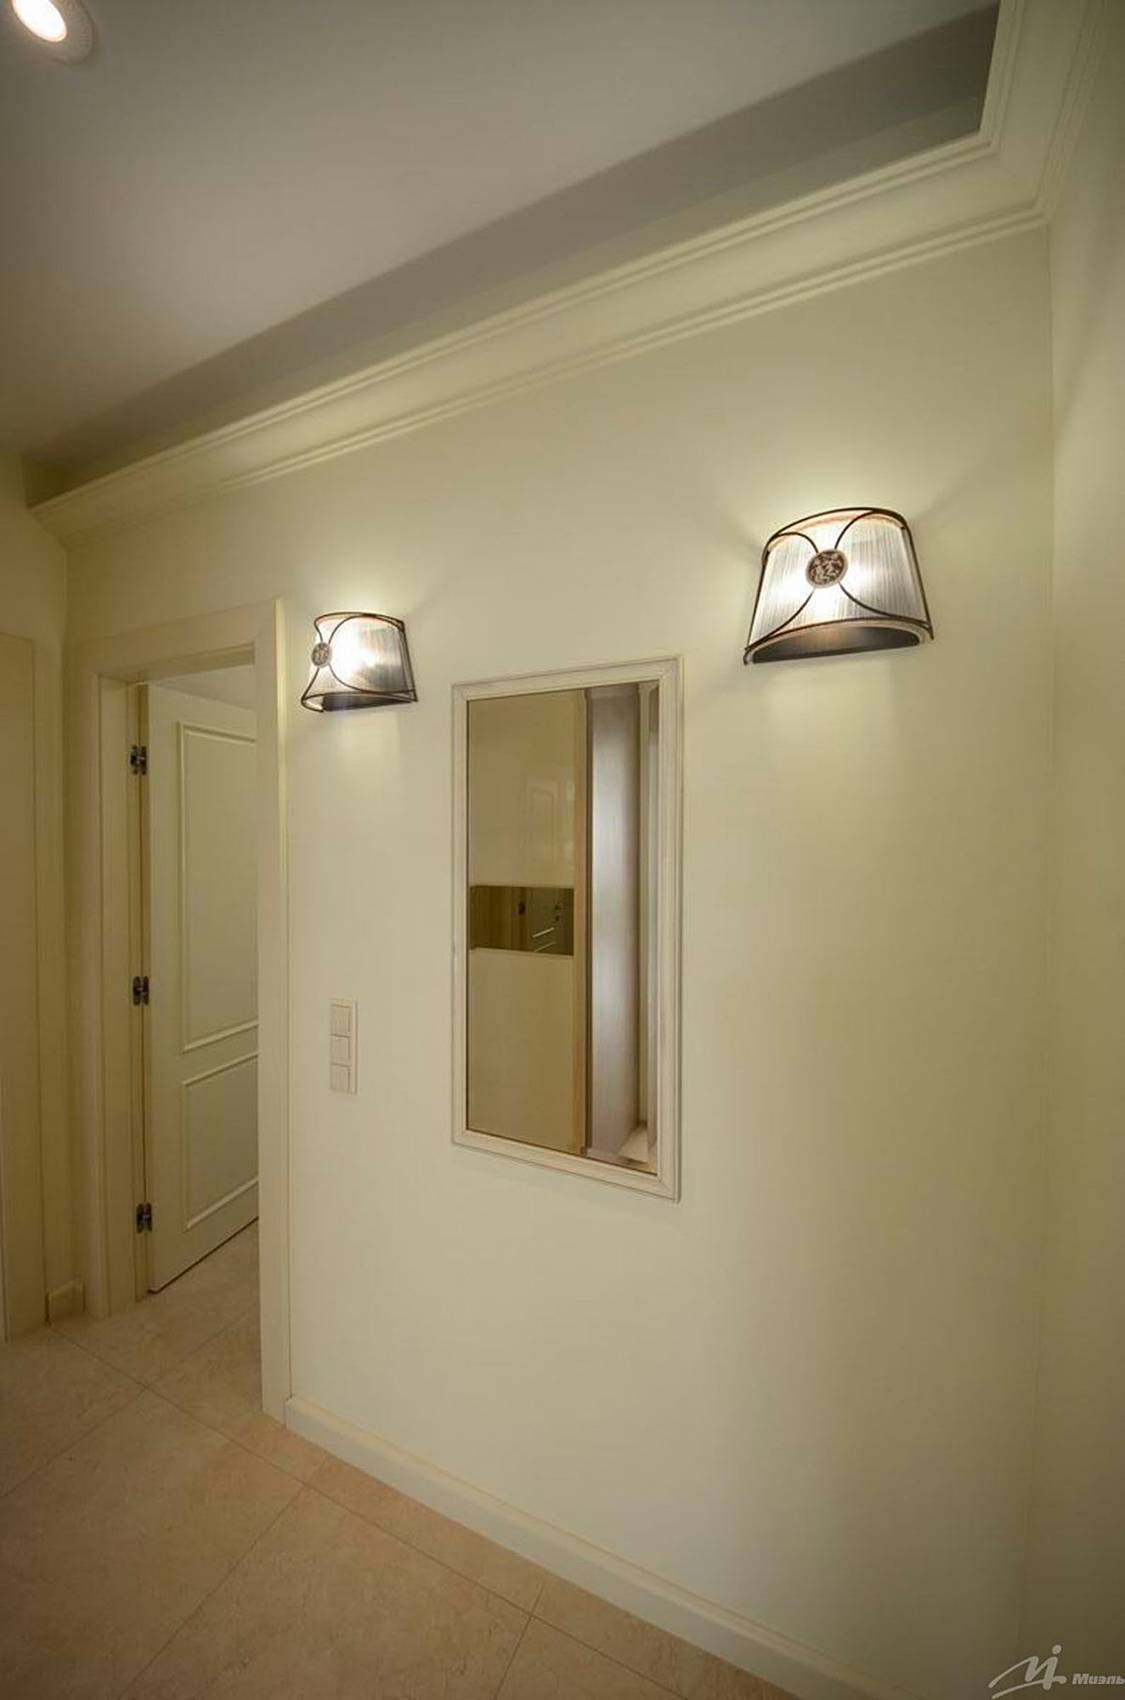 Примеры дизайна настенных светильников для коридора